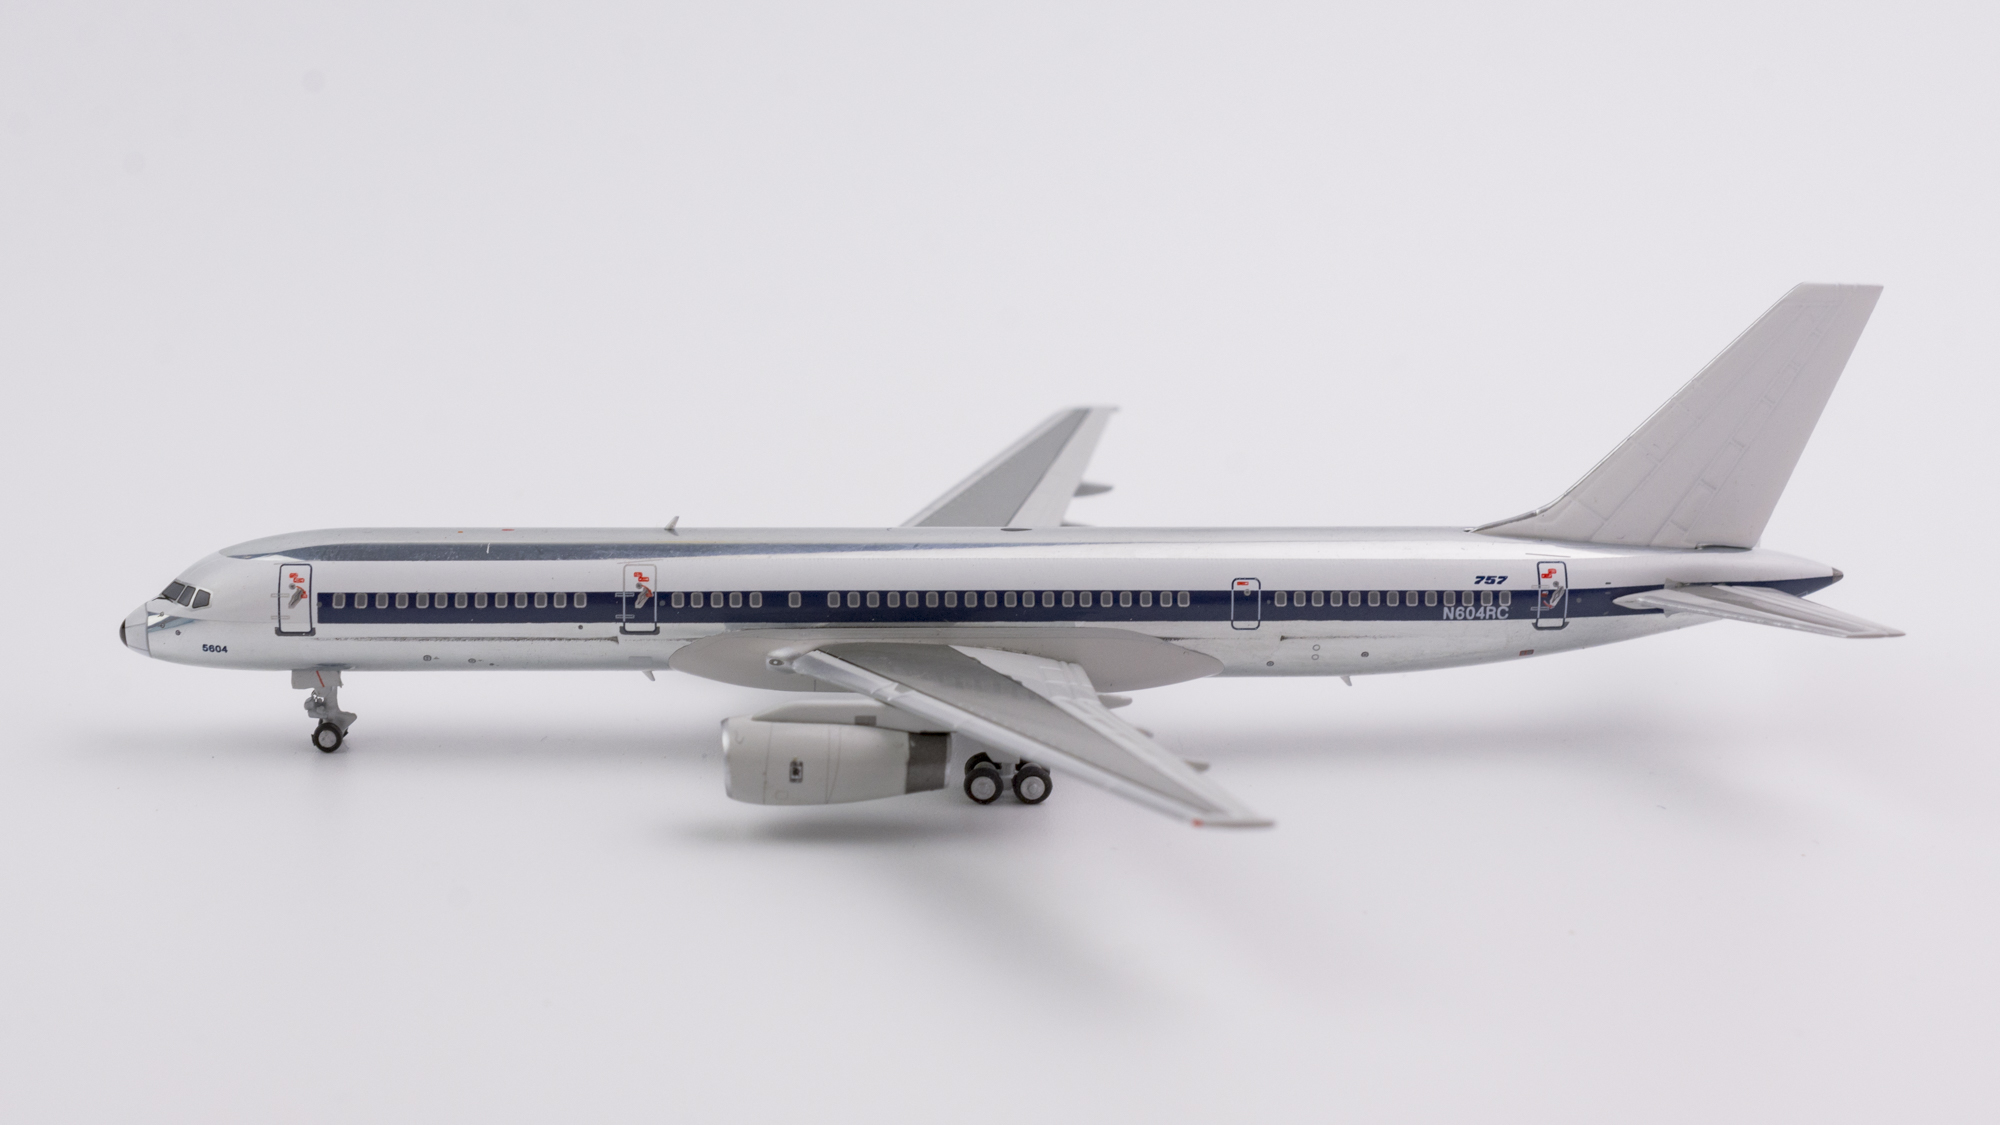 Flight Miniatures Northwest Airlines NWA 2003 Boeing 757-200 1:200 Scale REG#N535US Genesis Worldwide